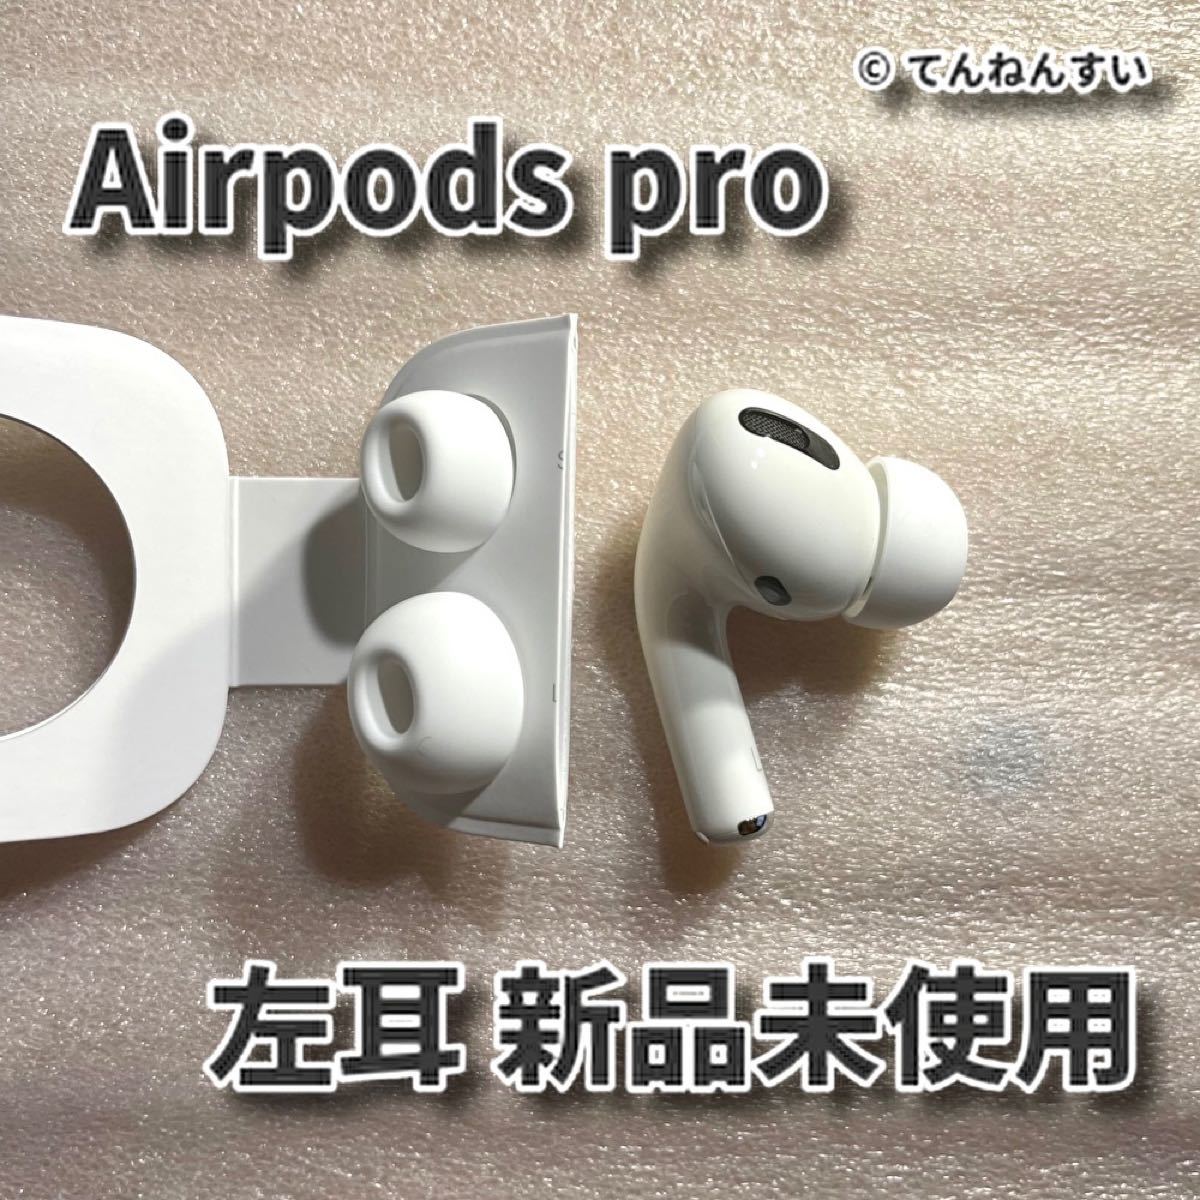 好きに 純正品AirPods 左耳のみ 右耳、充電ケースなし Pro - イヤフォン - hlt.no